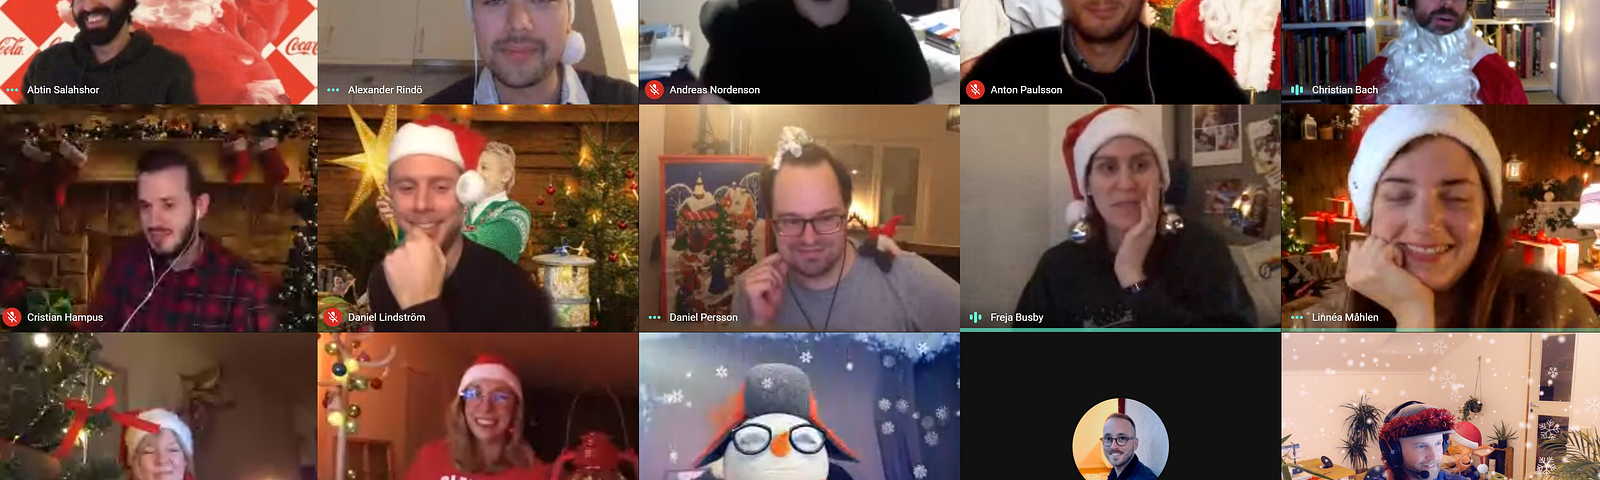 Skärmdump från en av teamets AW med jultema. 17 personer med varierad julklädsel i ett rutnät från Google Meet.